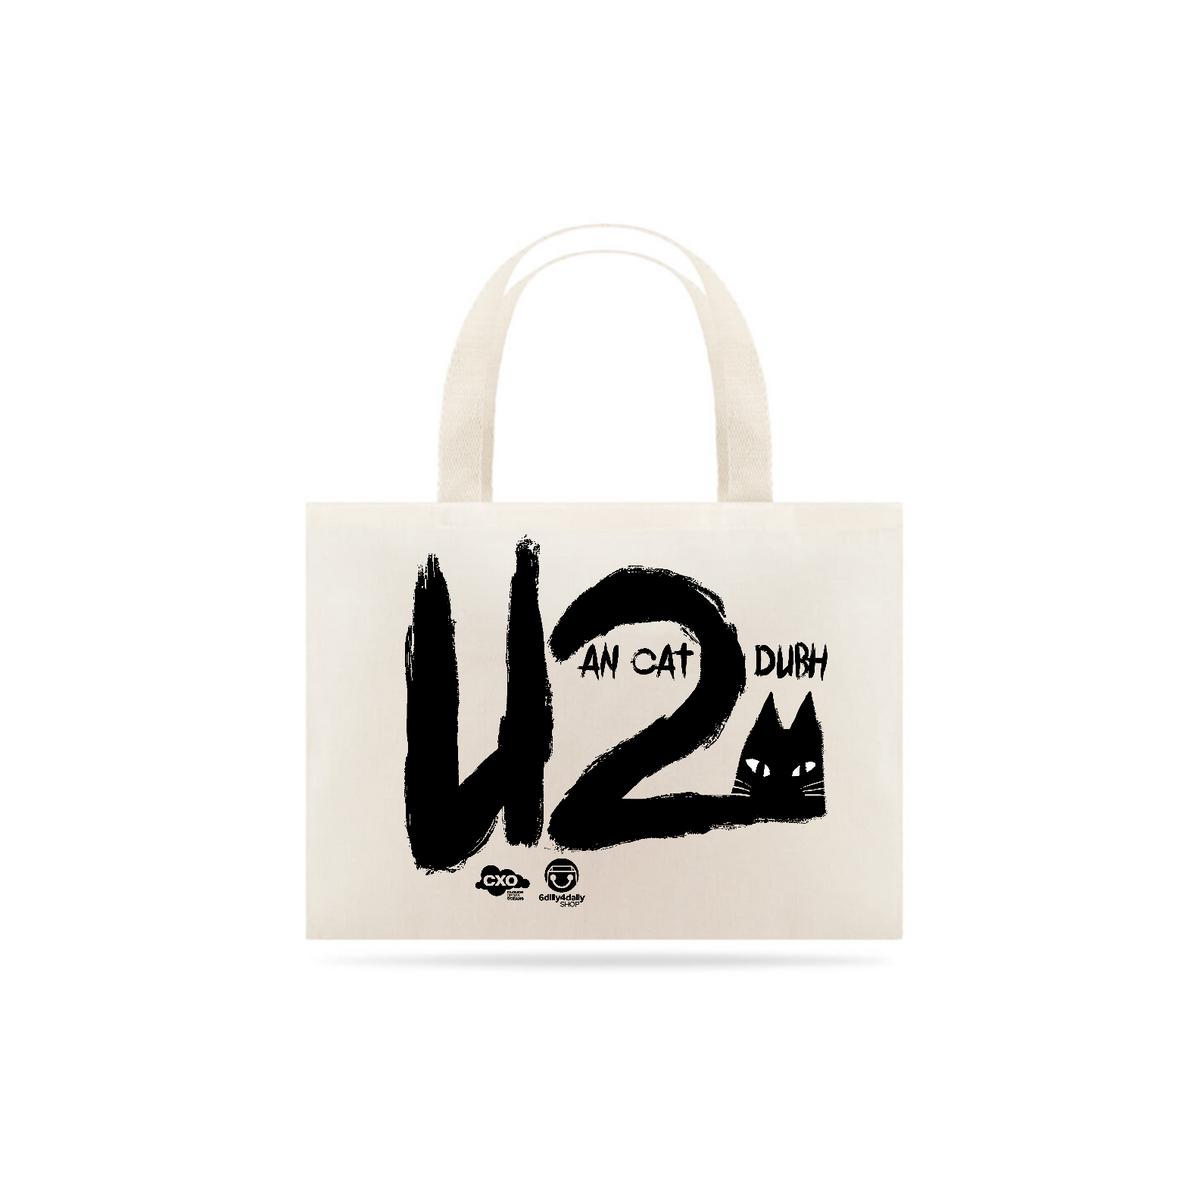 Nome do produto: Ecobag An Cat Dubh U2